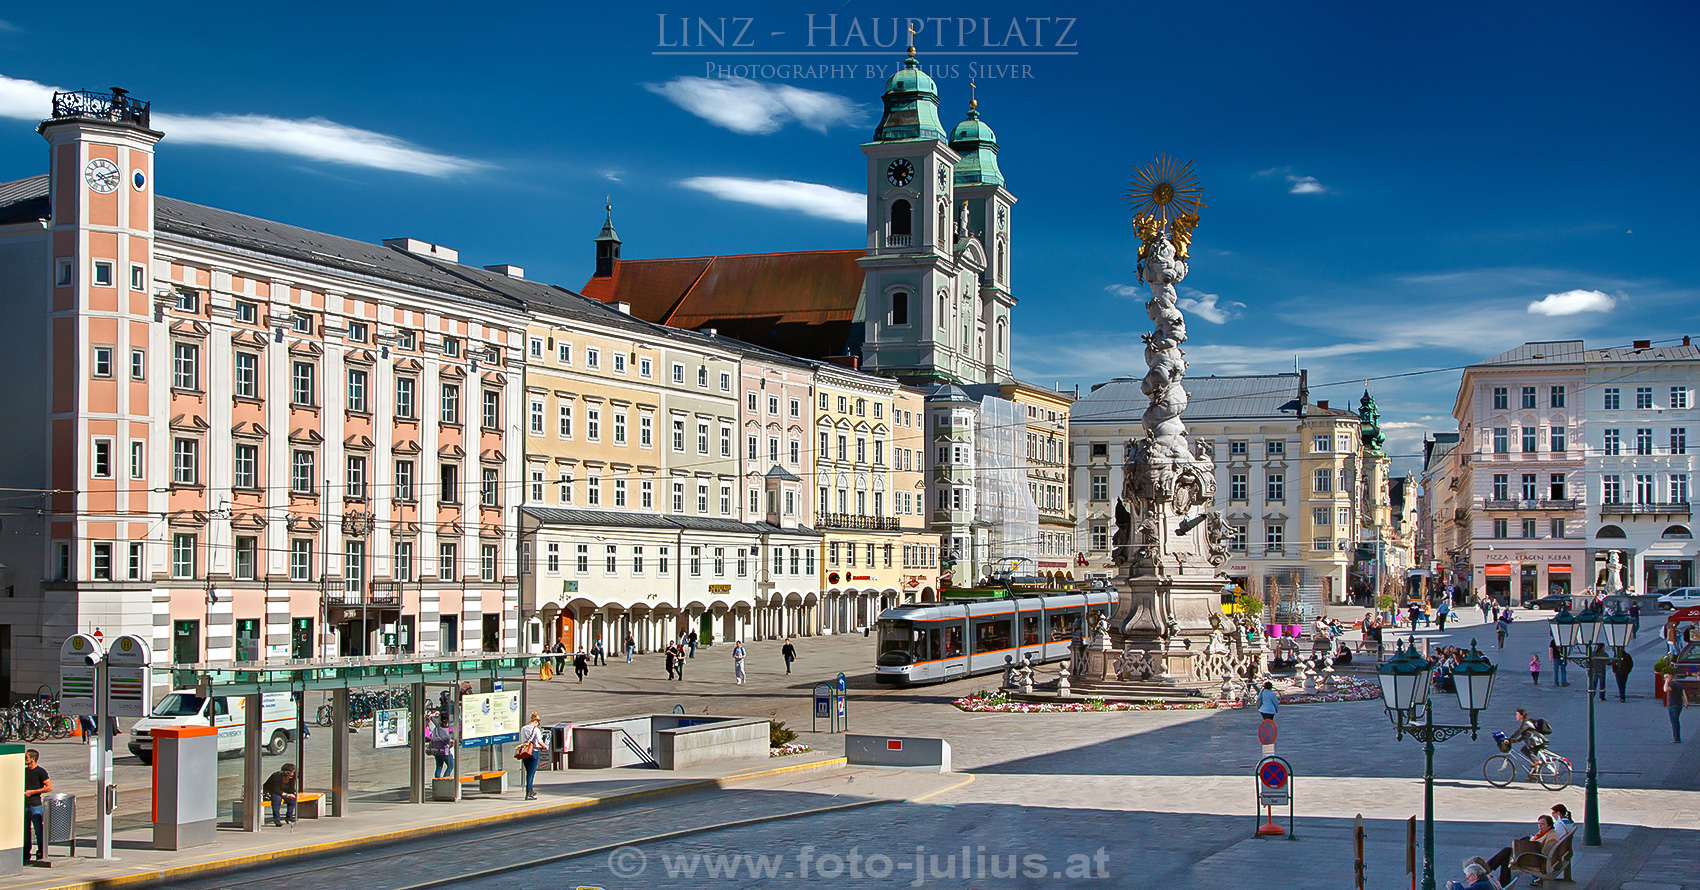 linz036a_Linz_Hauptplatz.jpg, 813kB